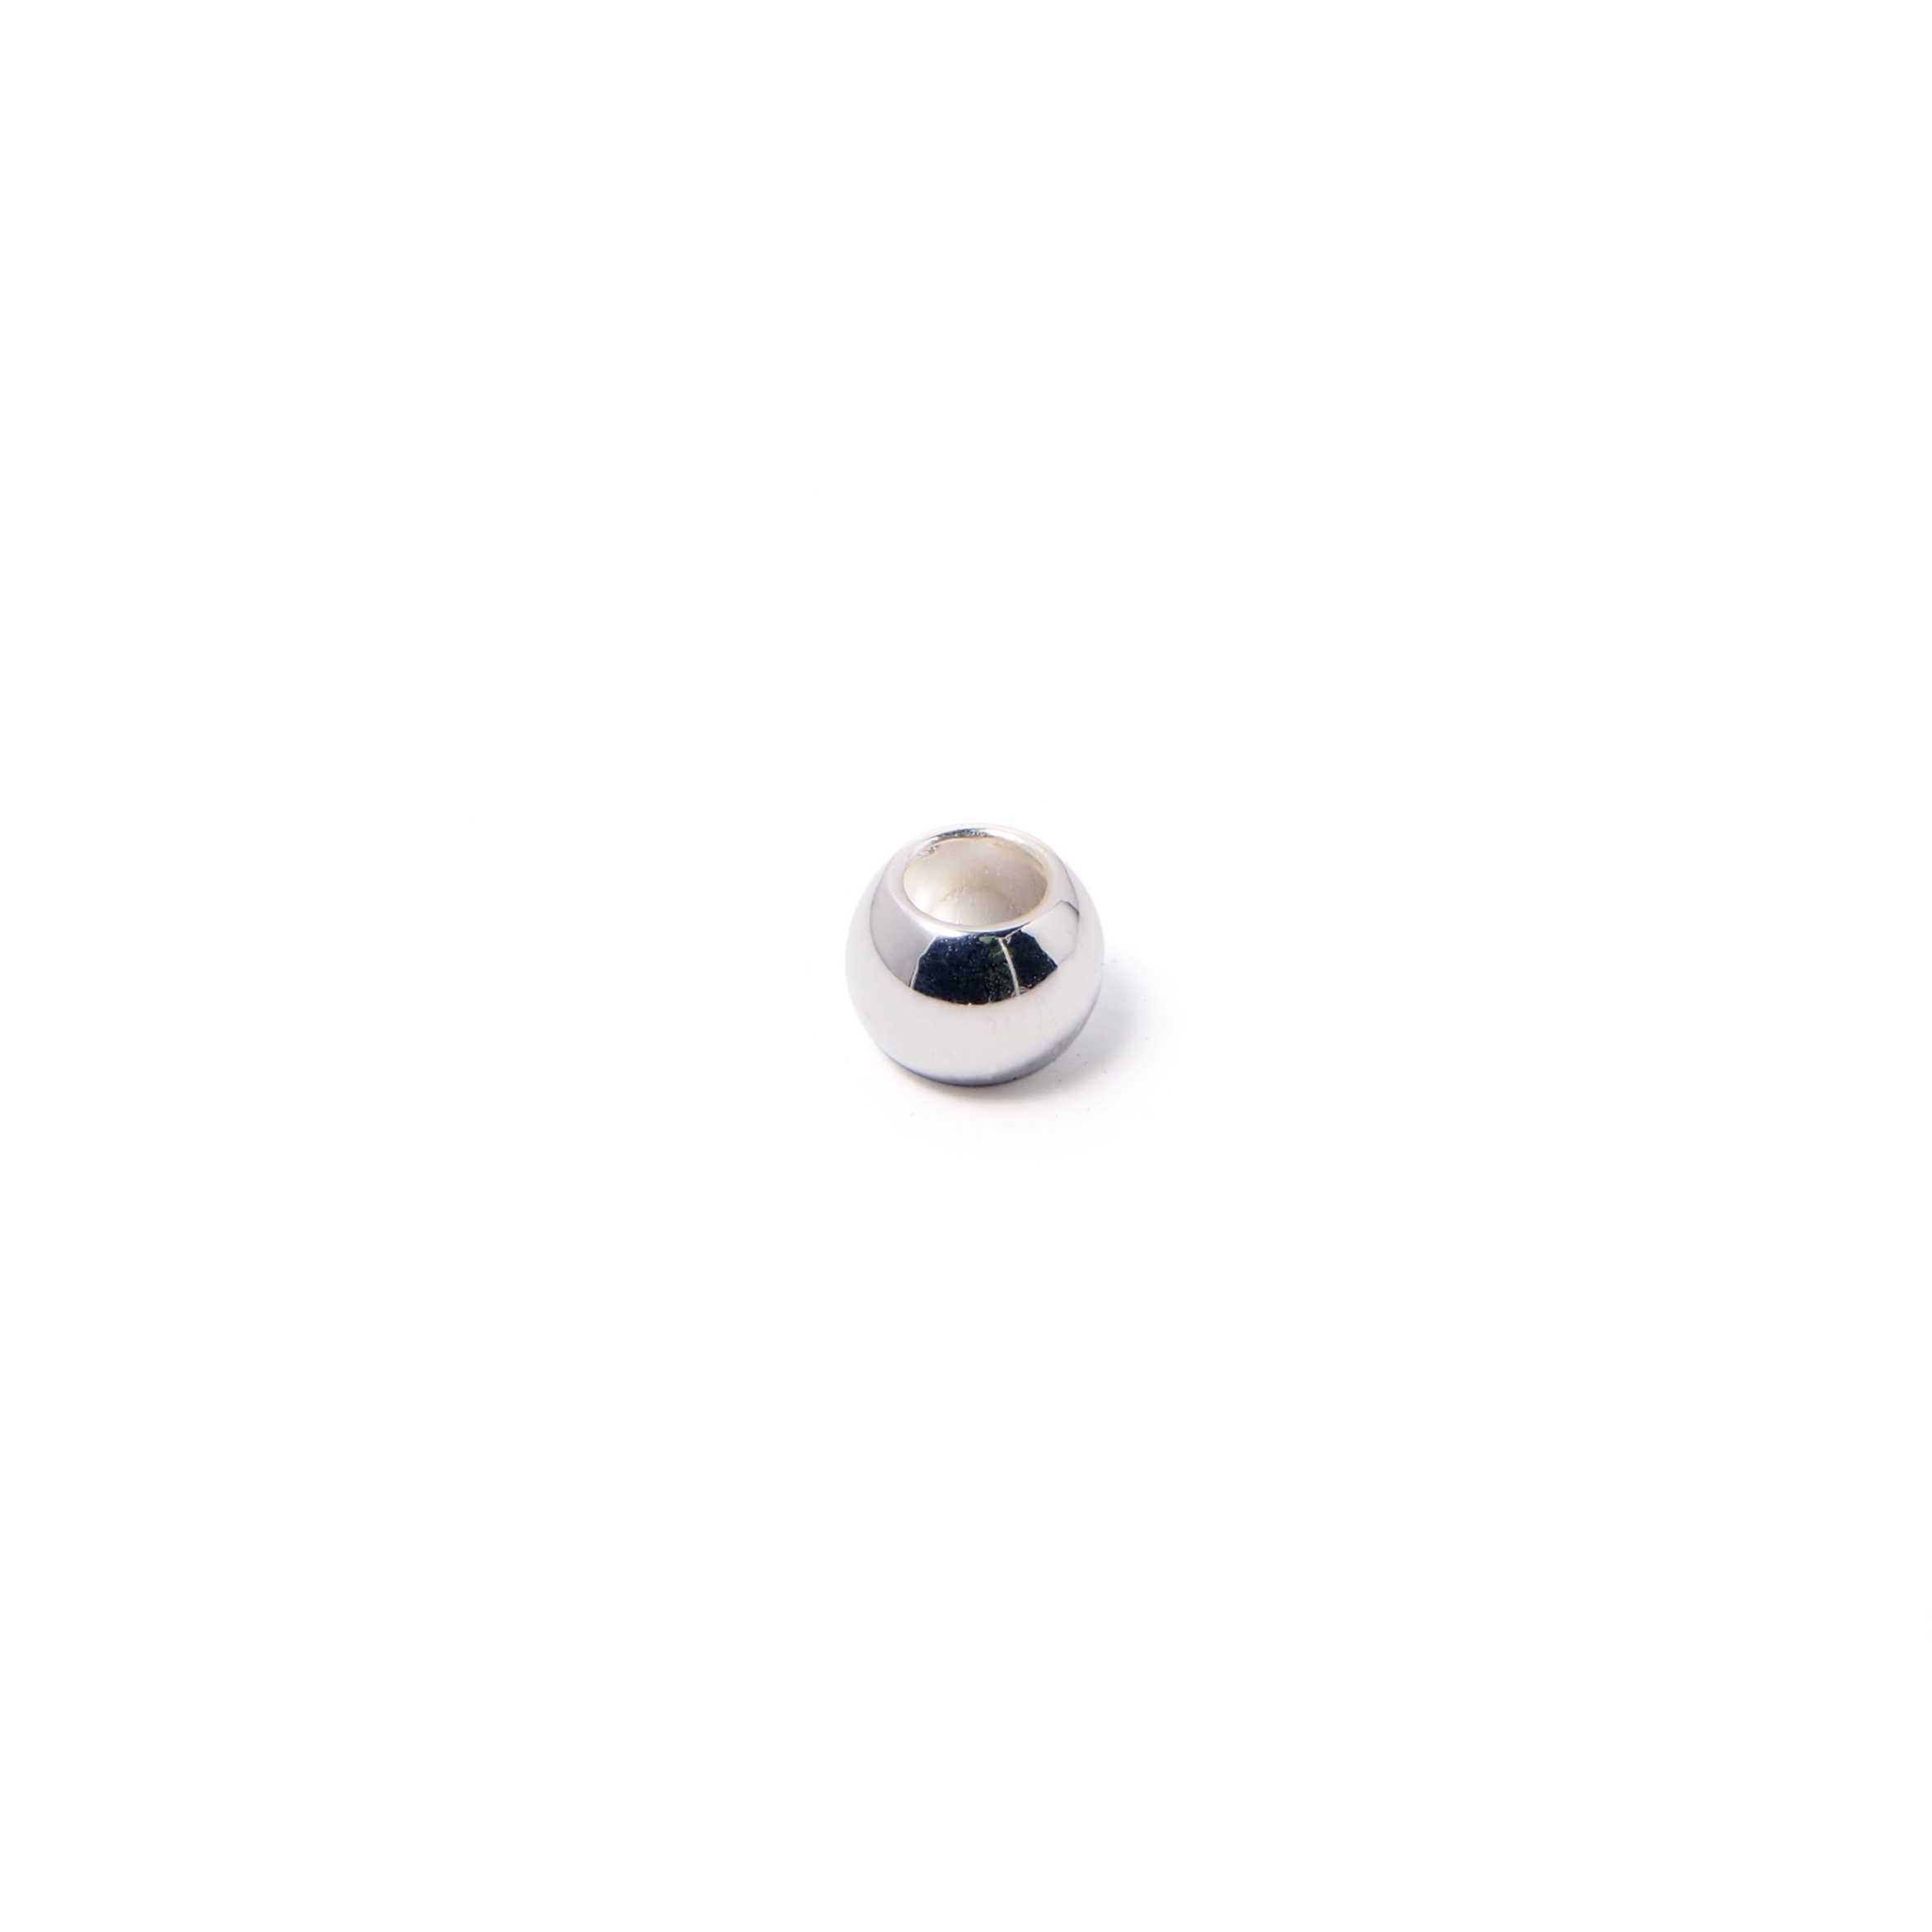 Bola pequeña, de 6 mm. de diámetro exterior, con un agujero pasante de 3 mm. Bañada en plata de ley.